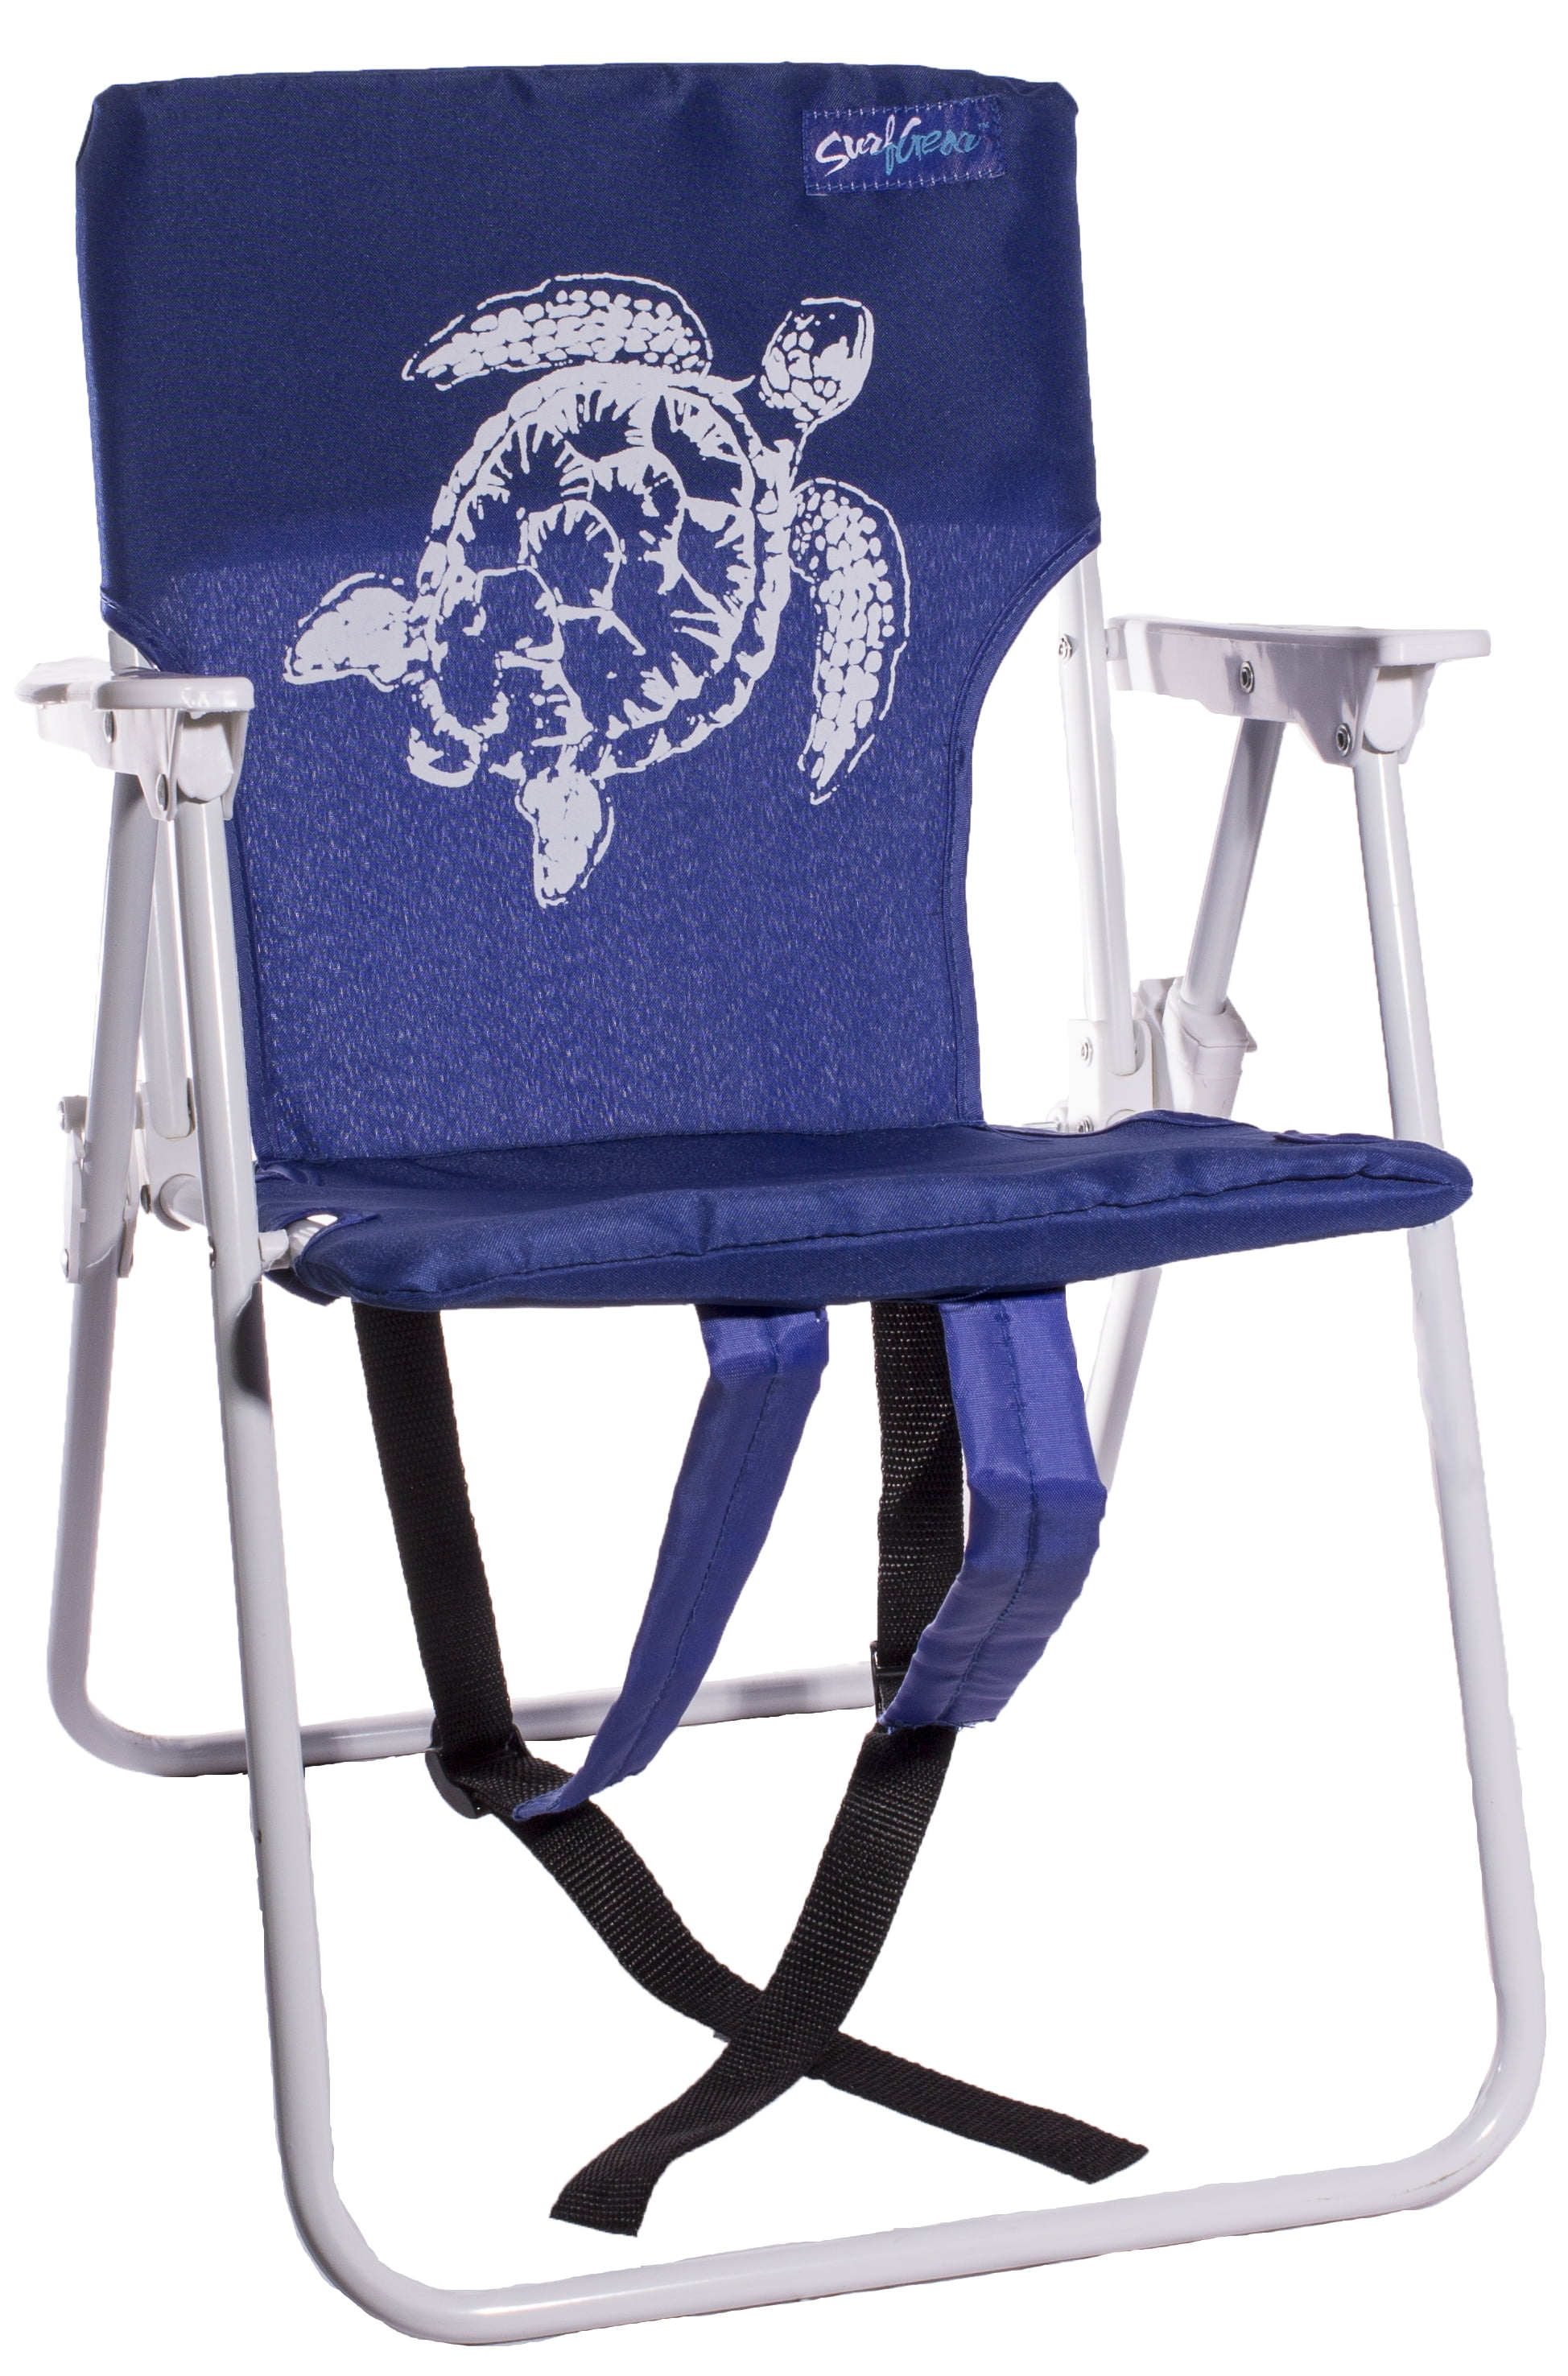 surf gear beach chair